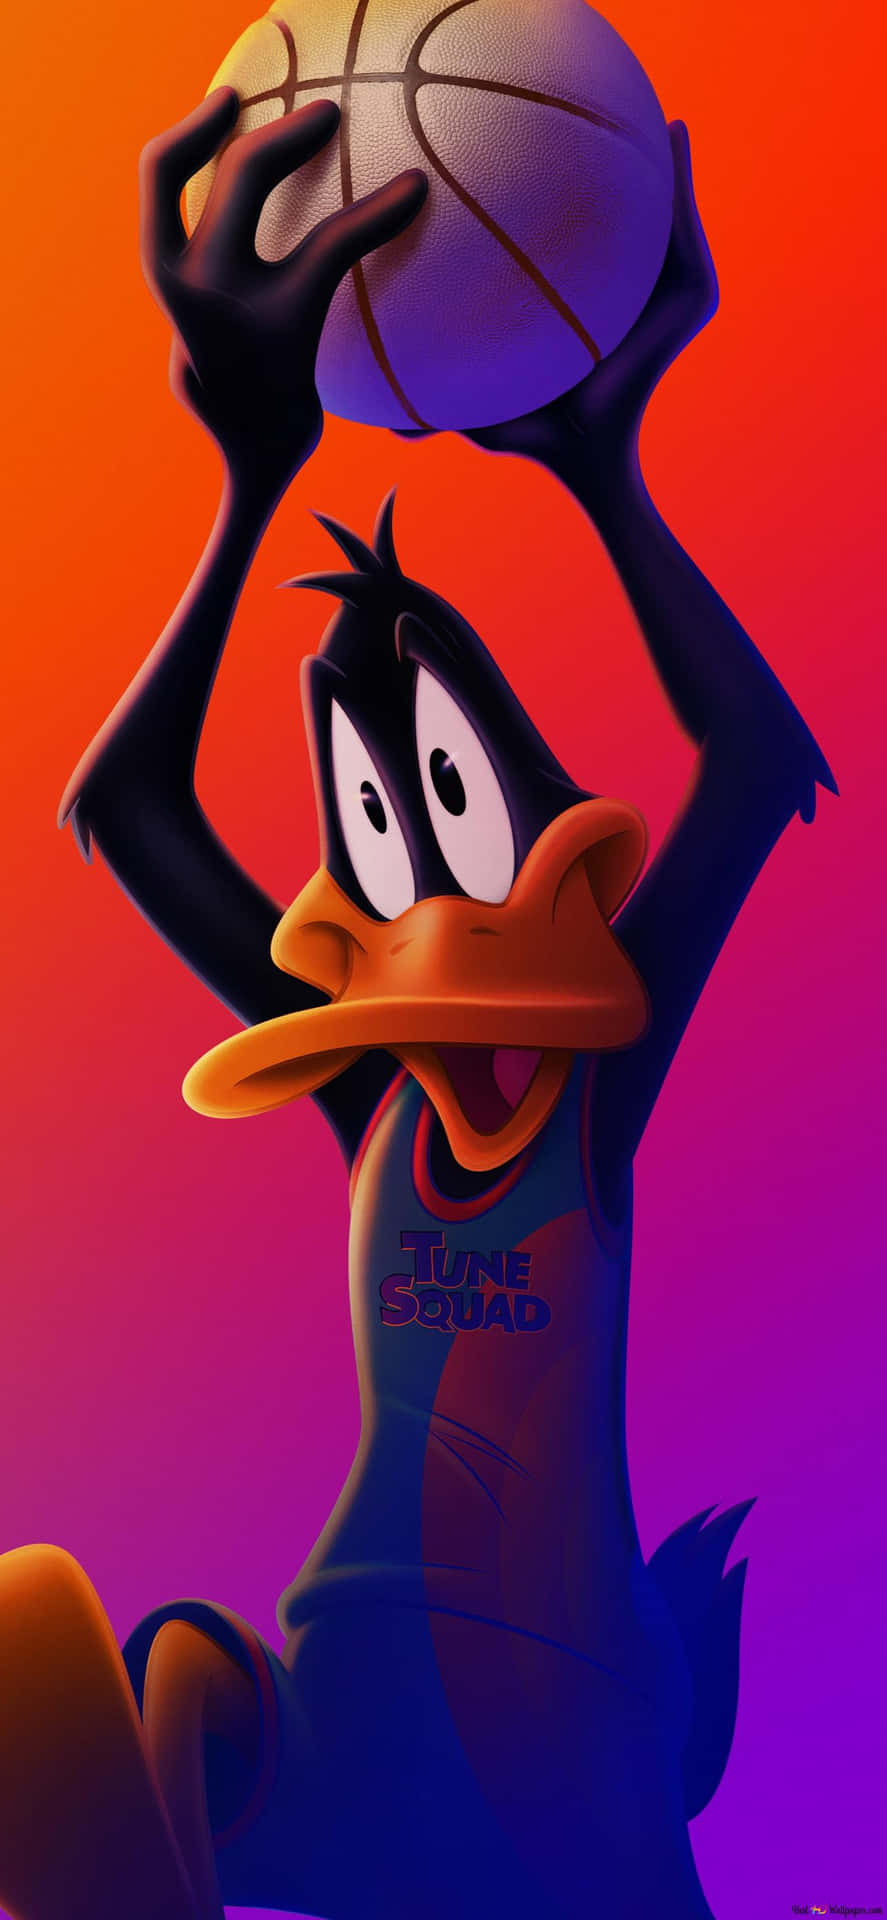 Bilddes Cartoon-charakters Daffy Duck